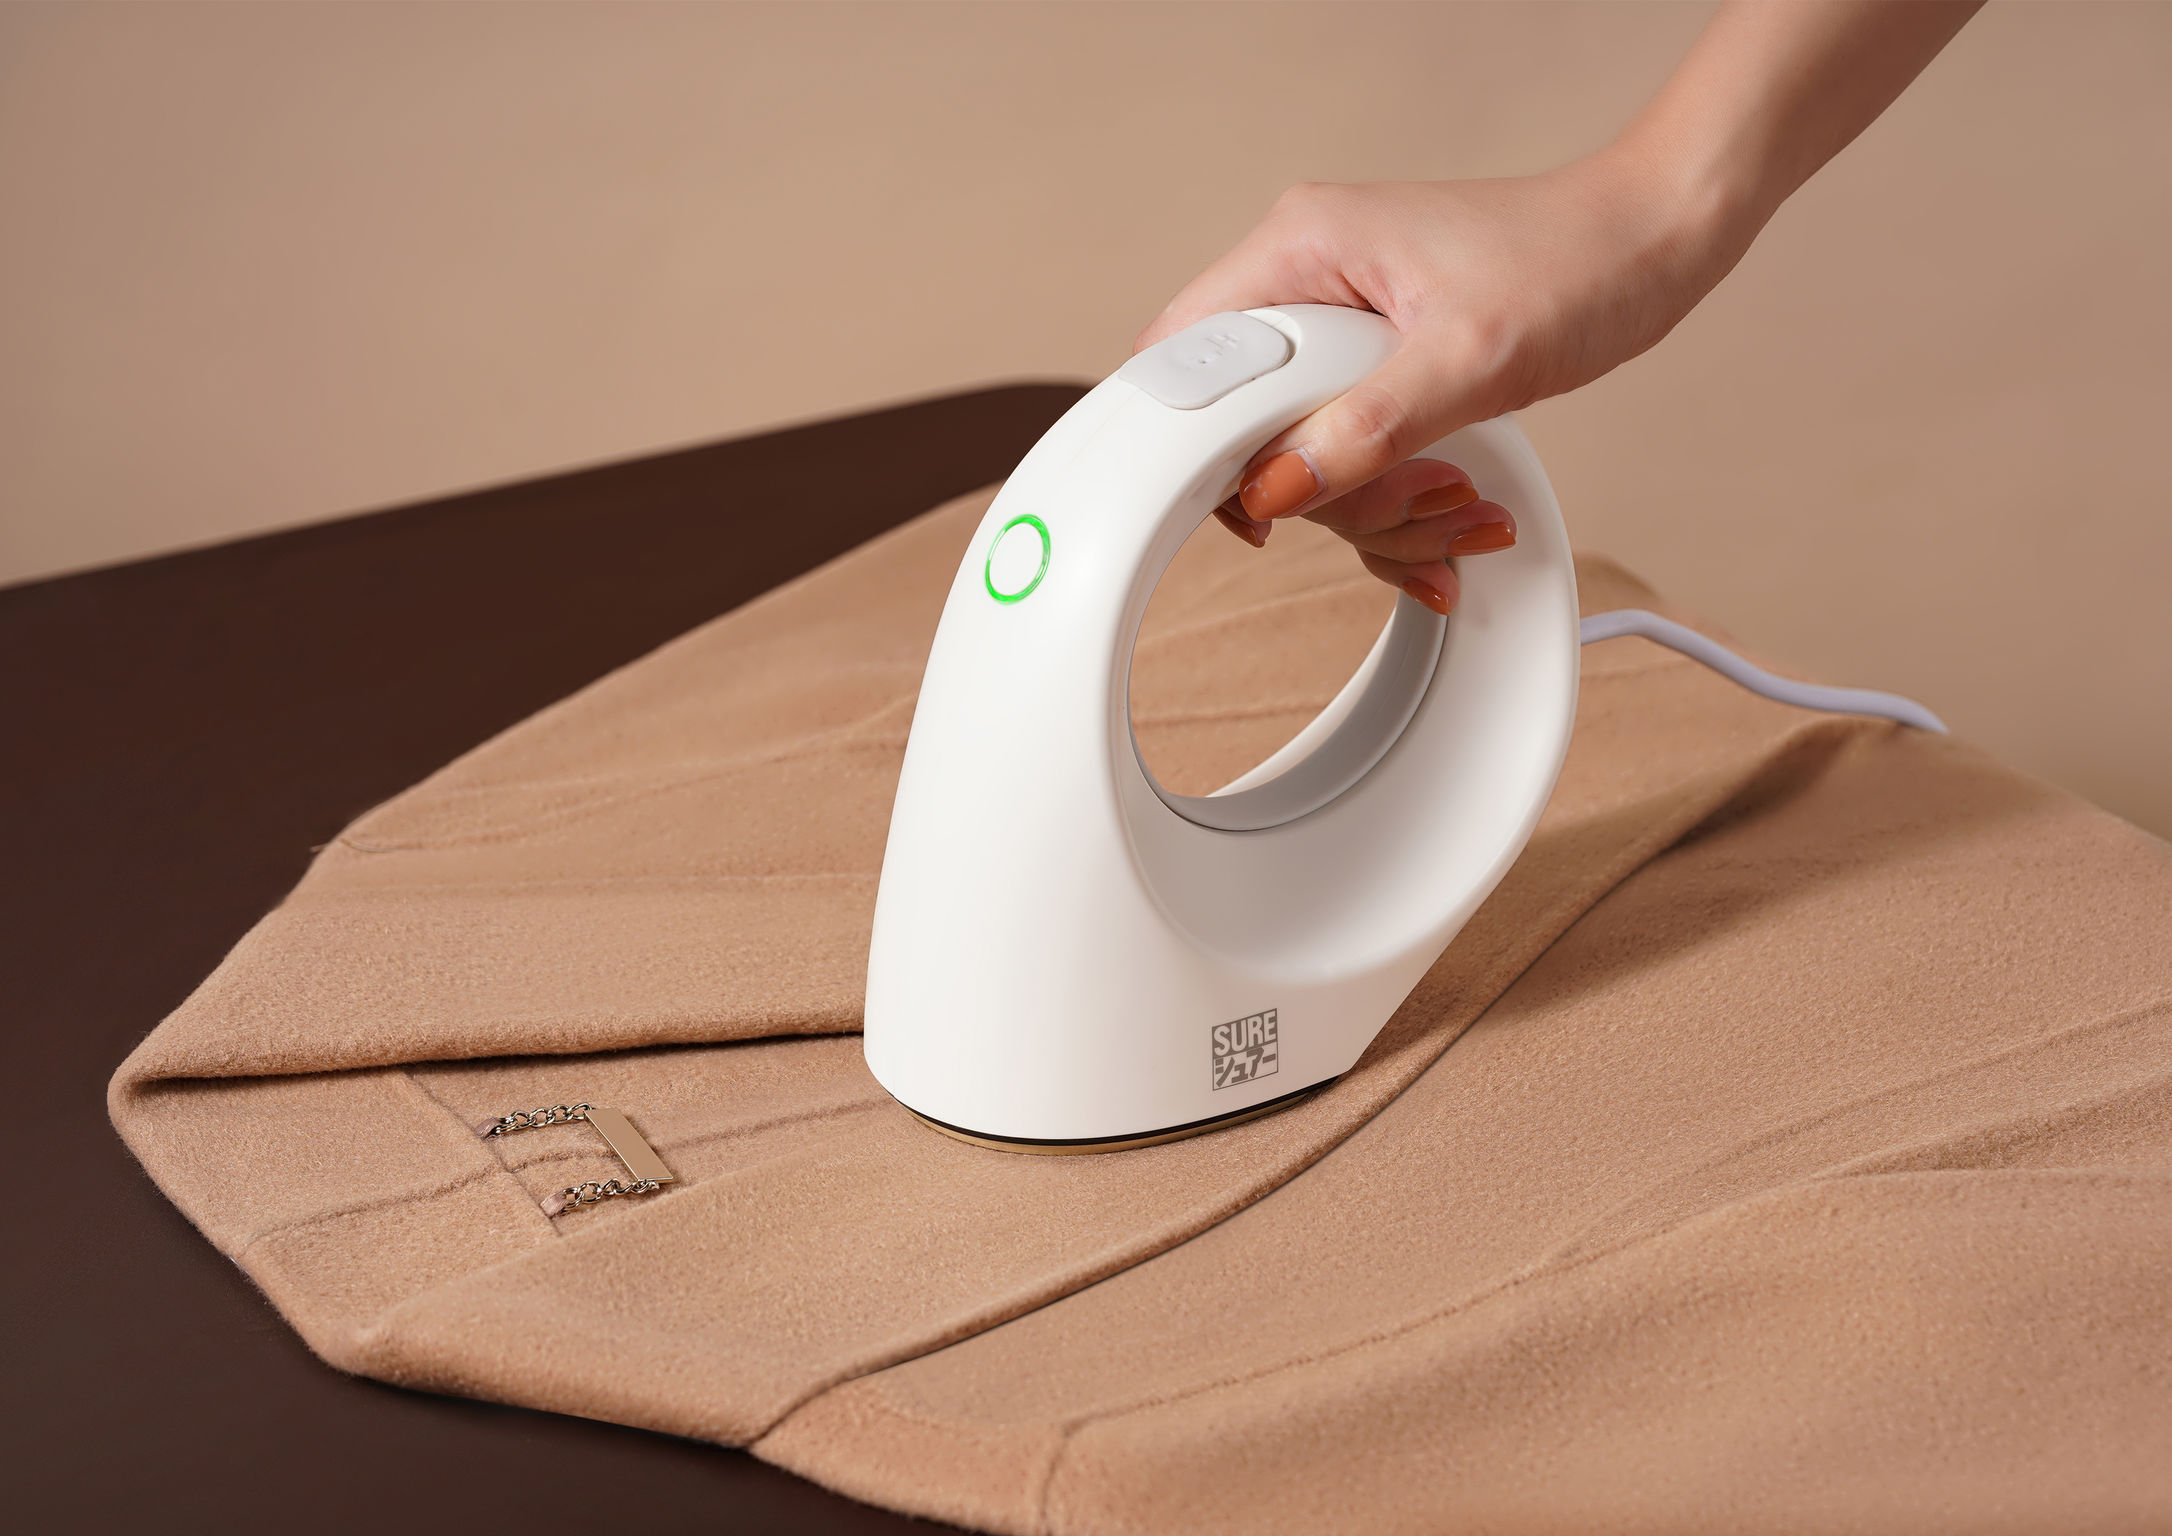 Small snail hand-held ironing machine